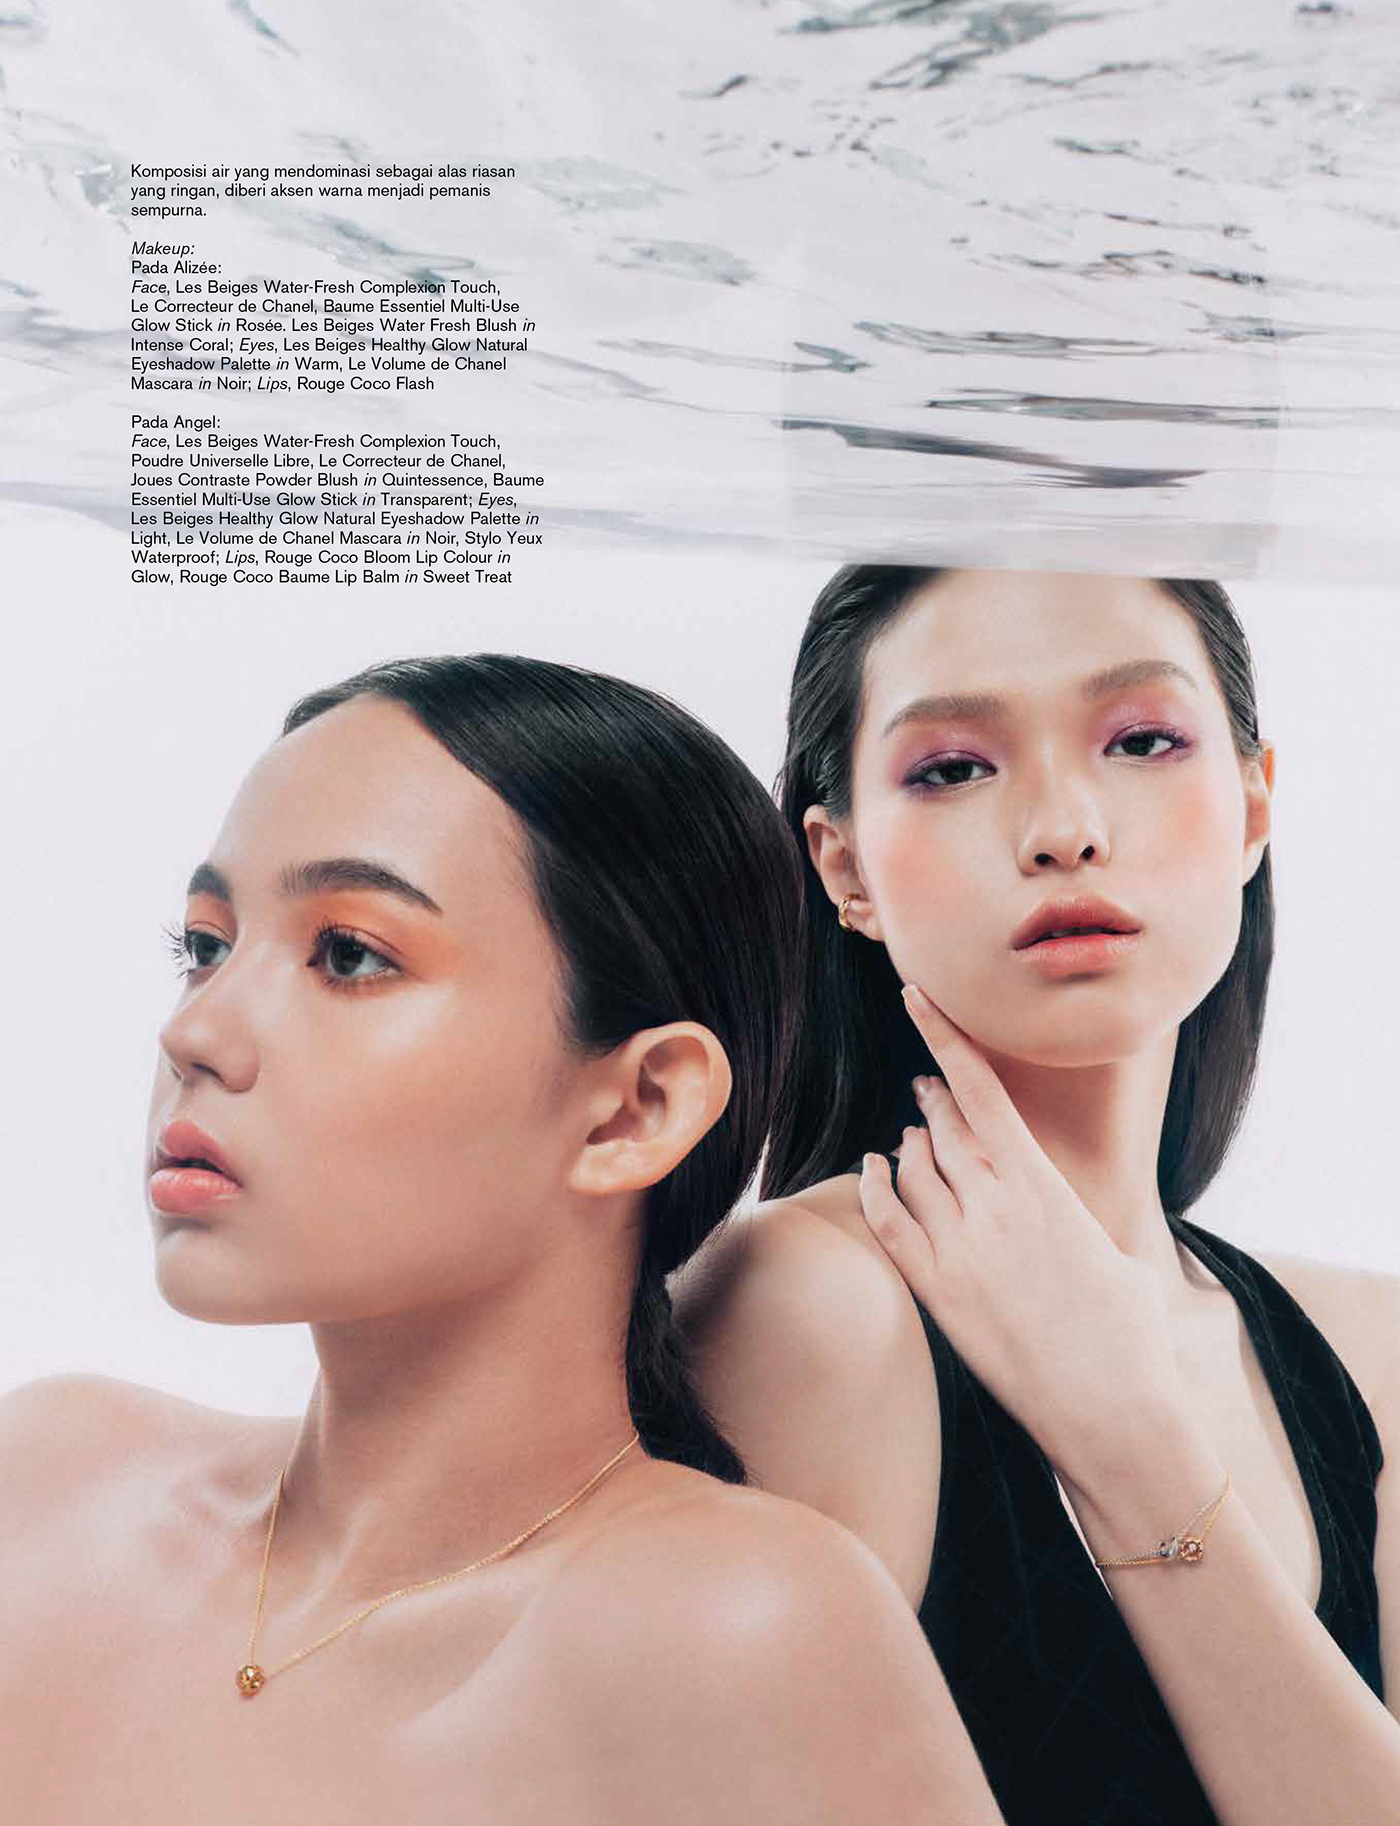 beauty chanel editorial magazine harper's bazaar indonesia makeup commercial advertisement